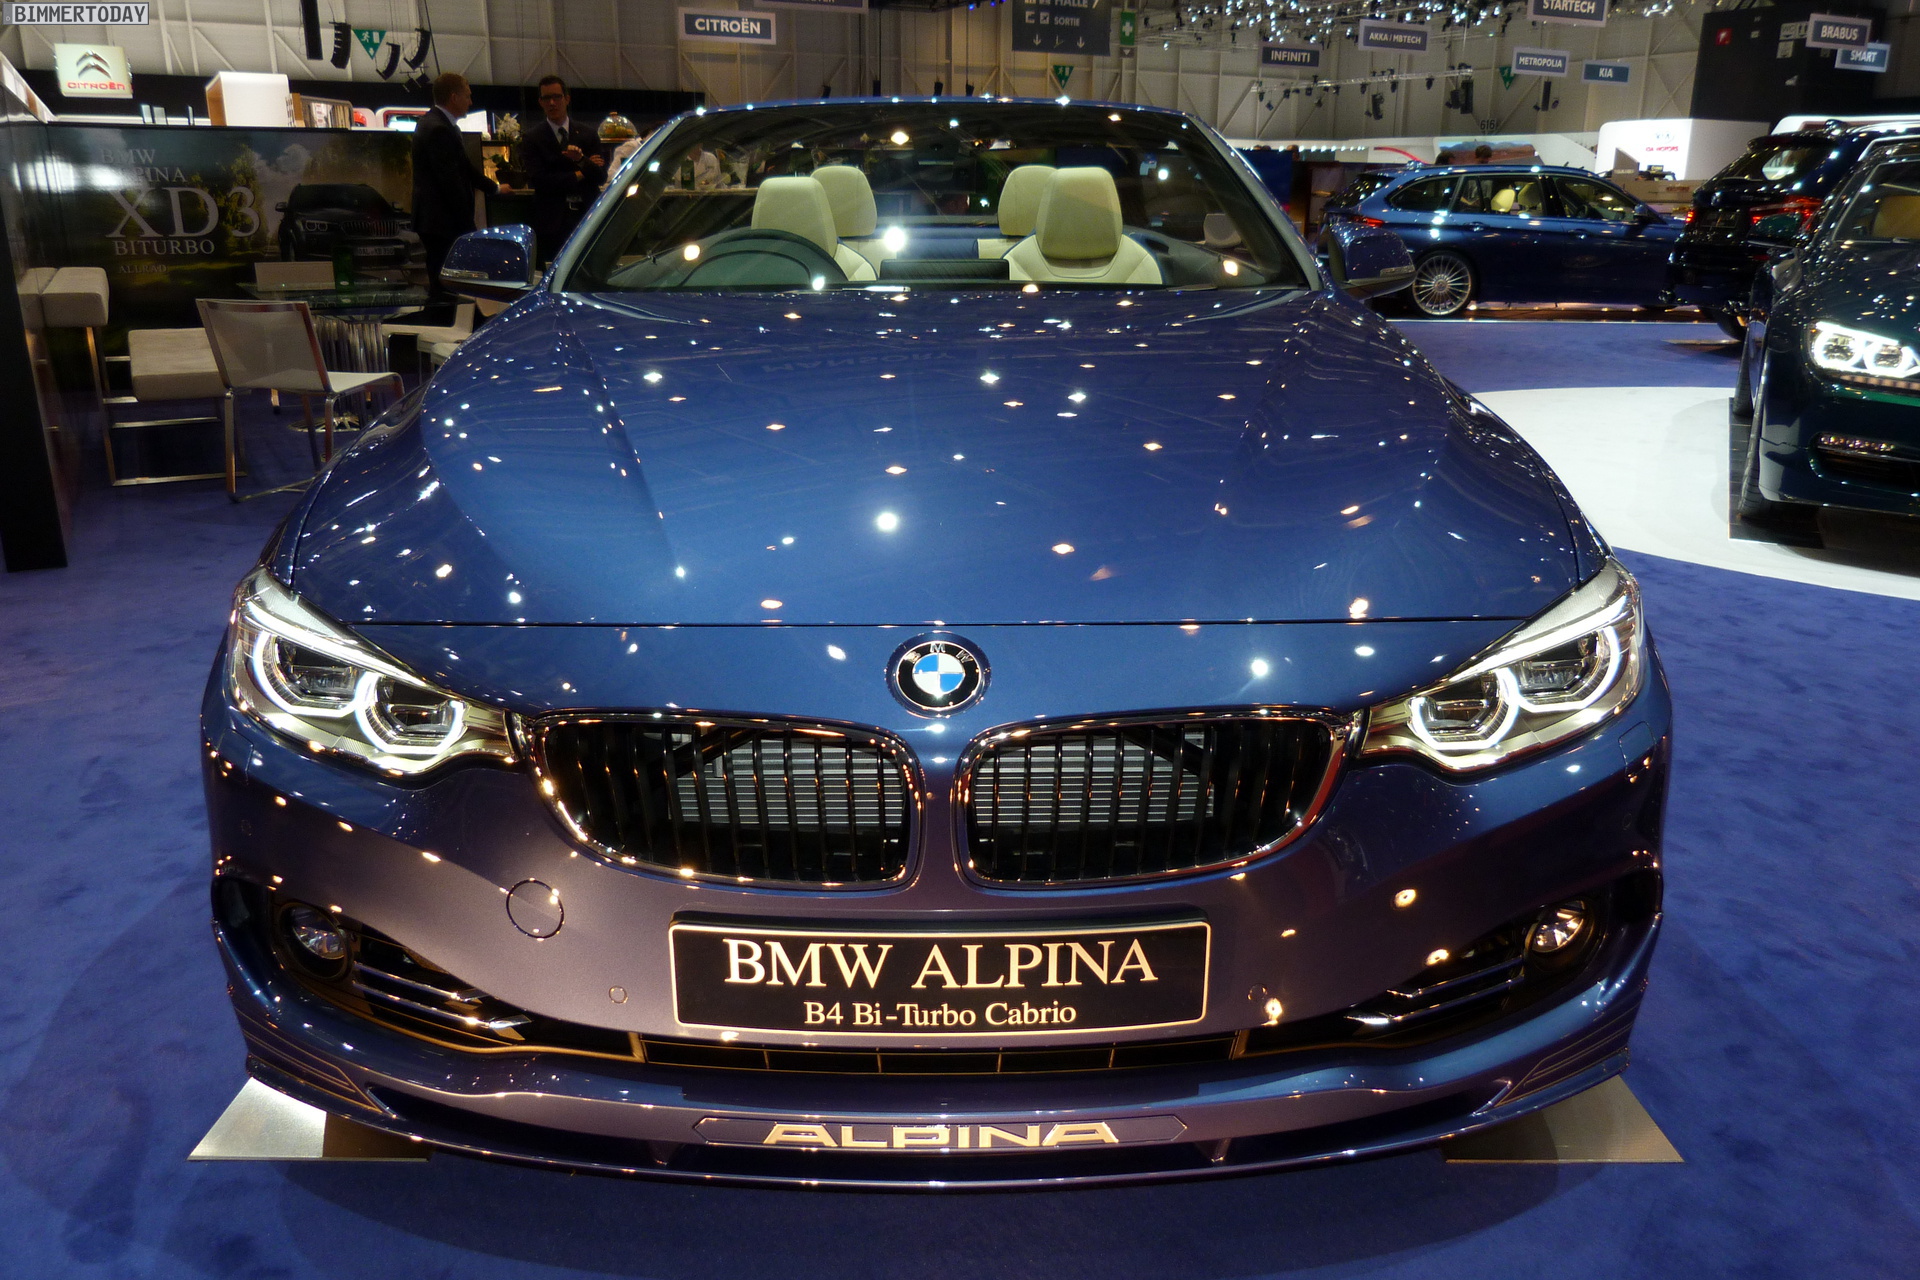 HQ 2014 BMW Alpina B4 Wallpapers | File 964.86Kb